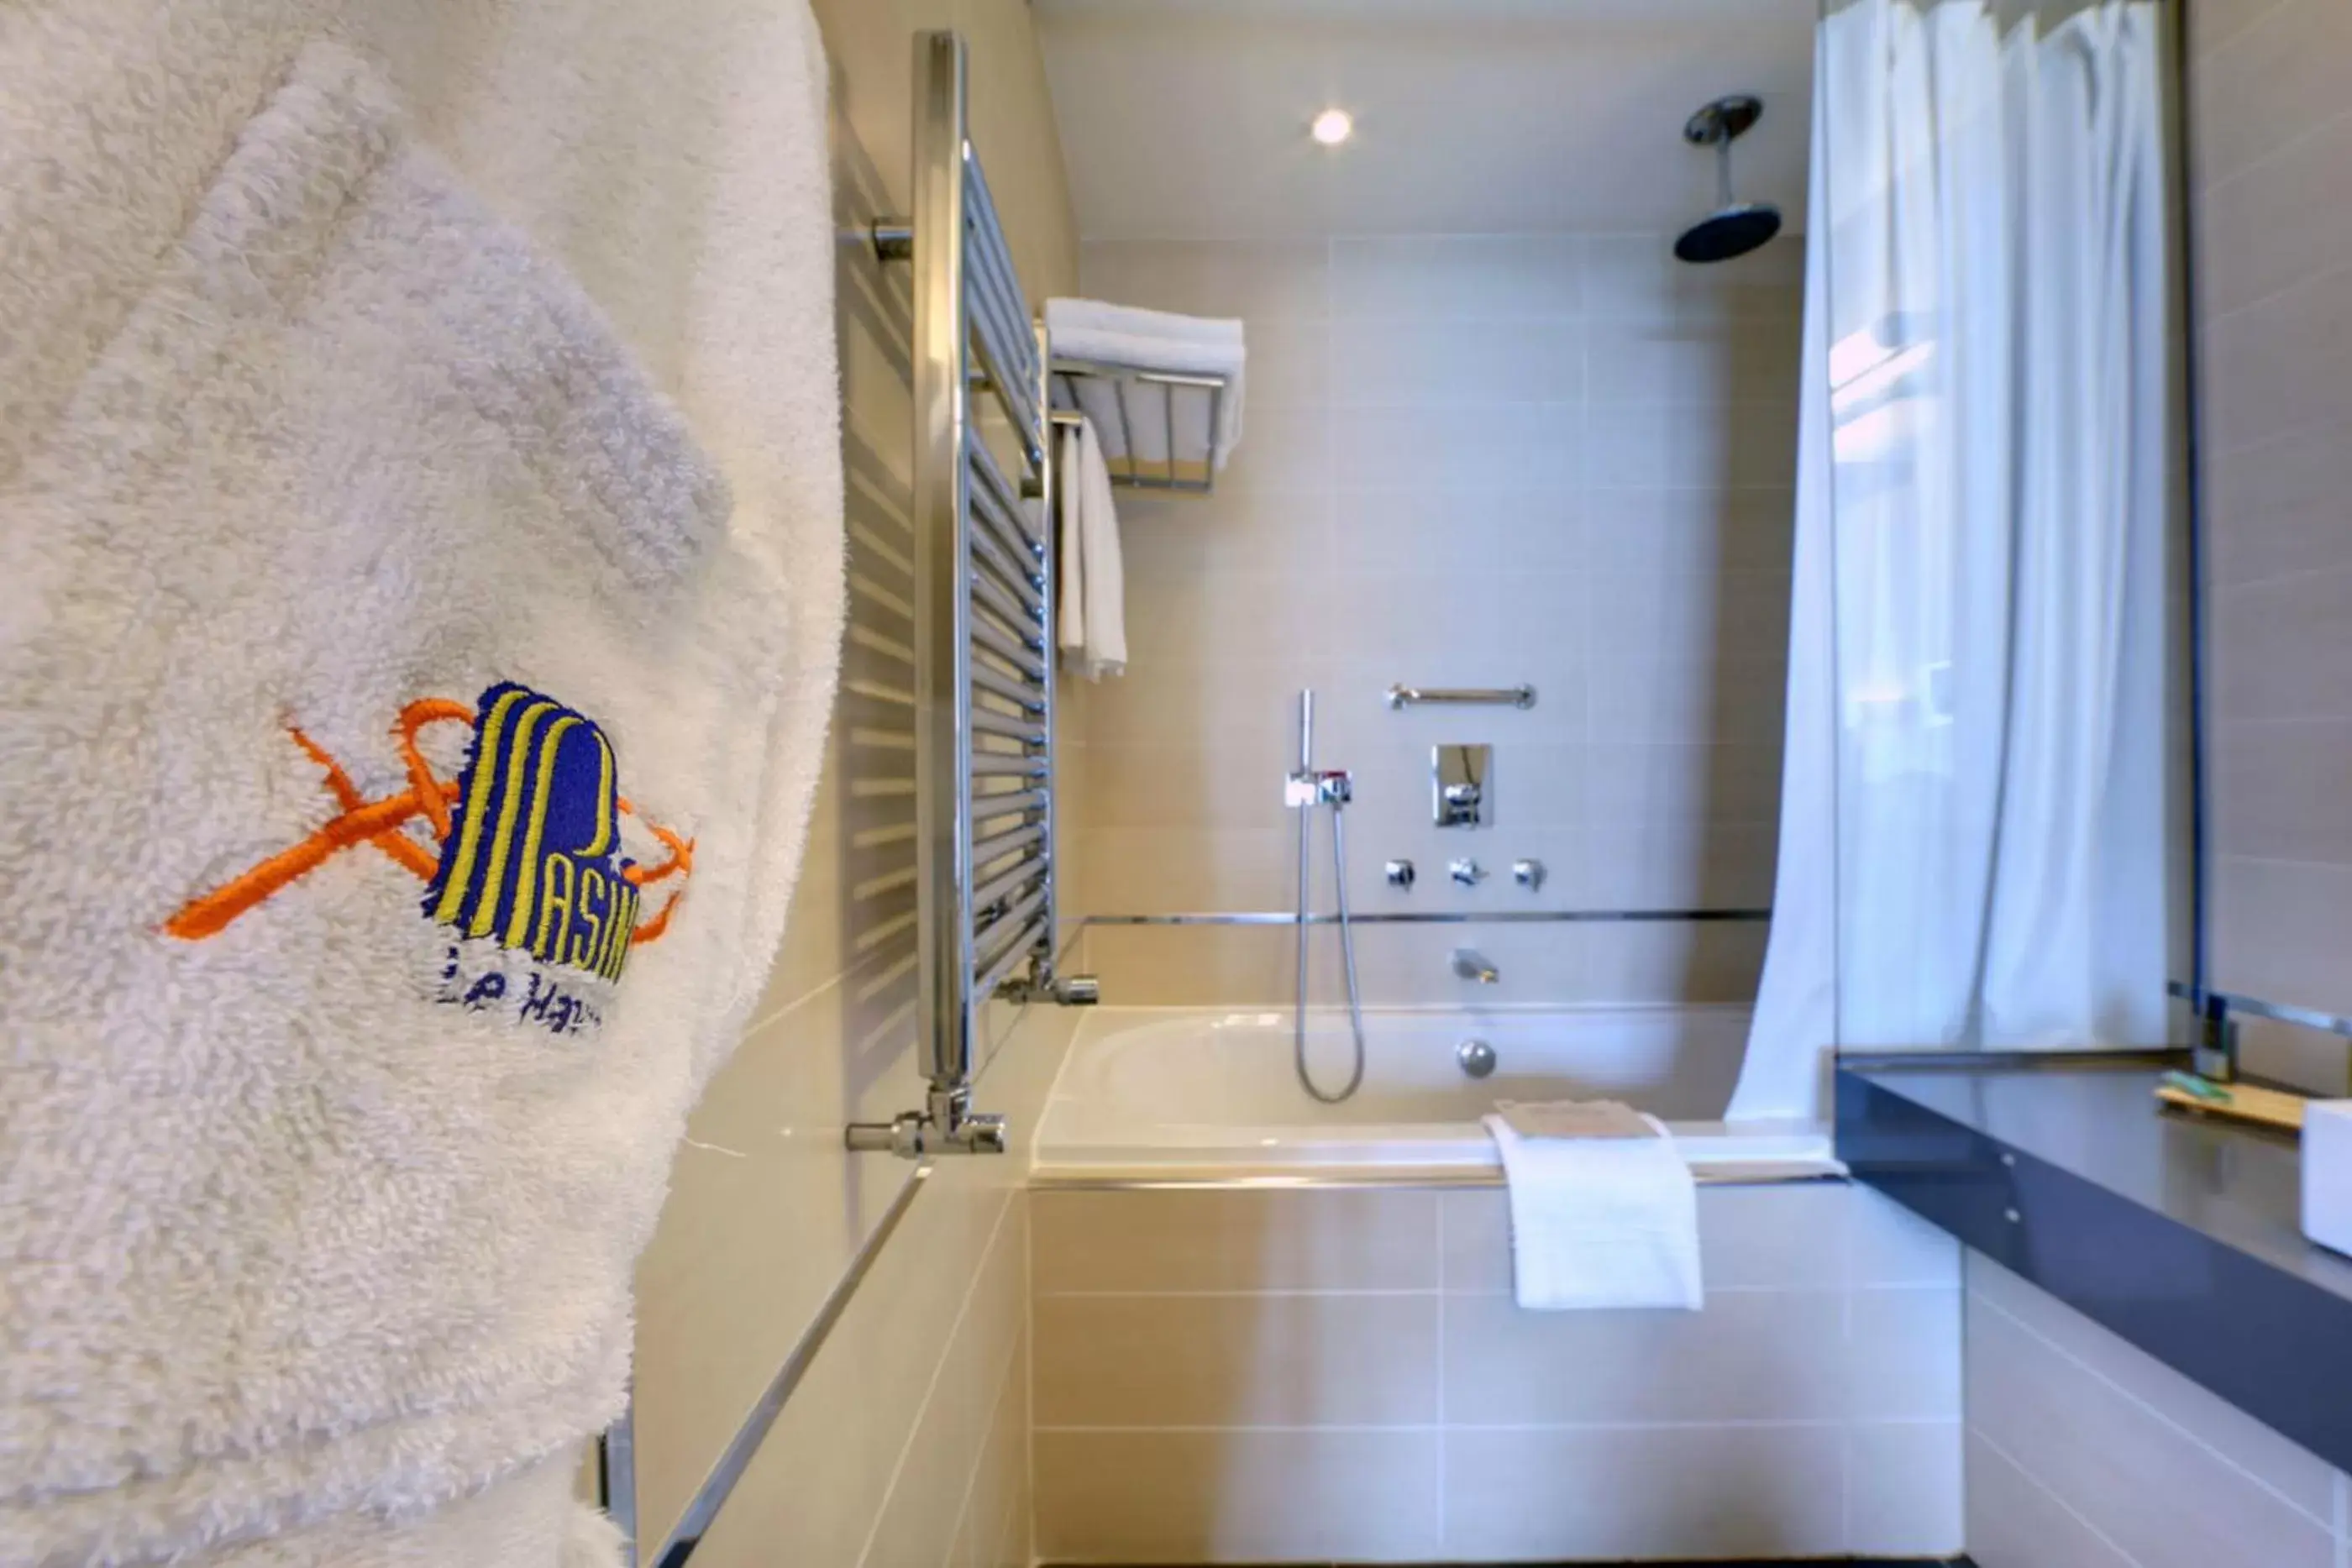 Decorative detail, Bathroom in Hotel Spa Le Pasino